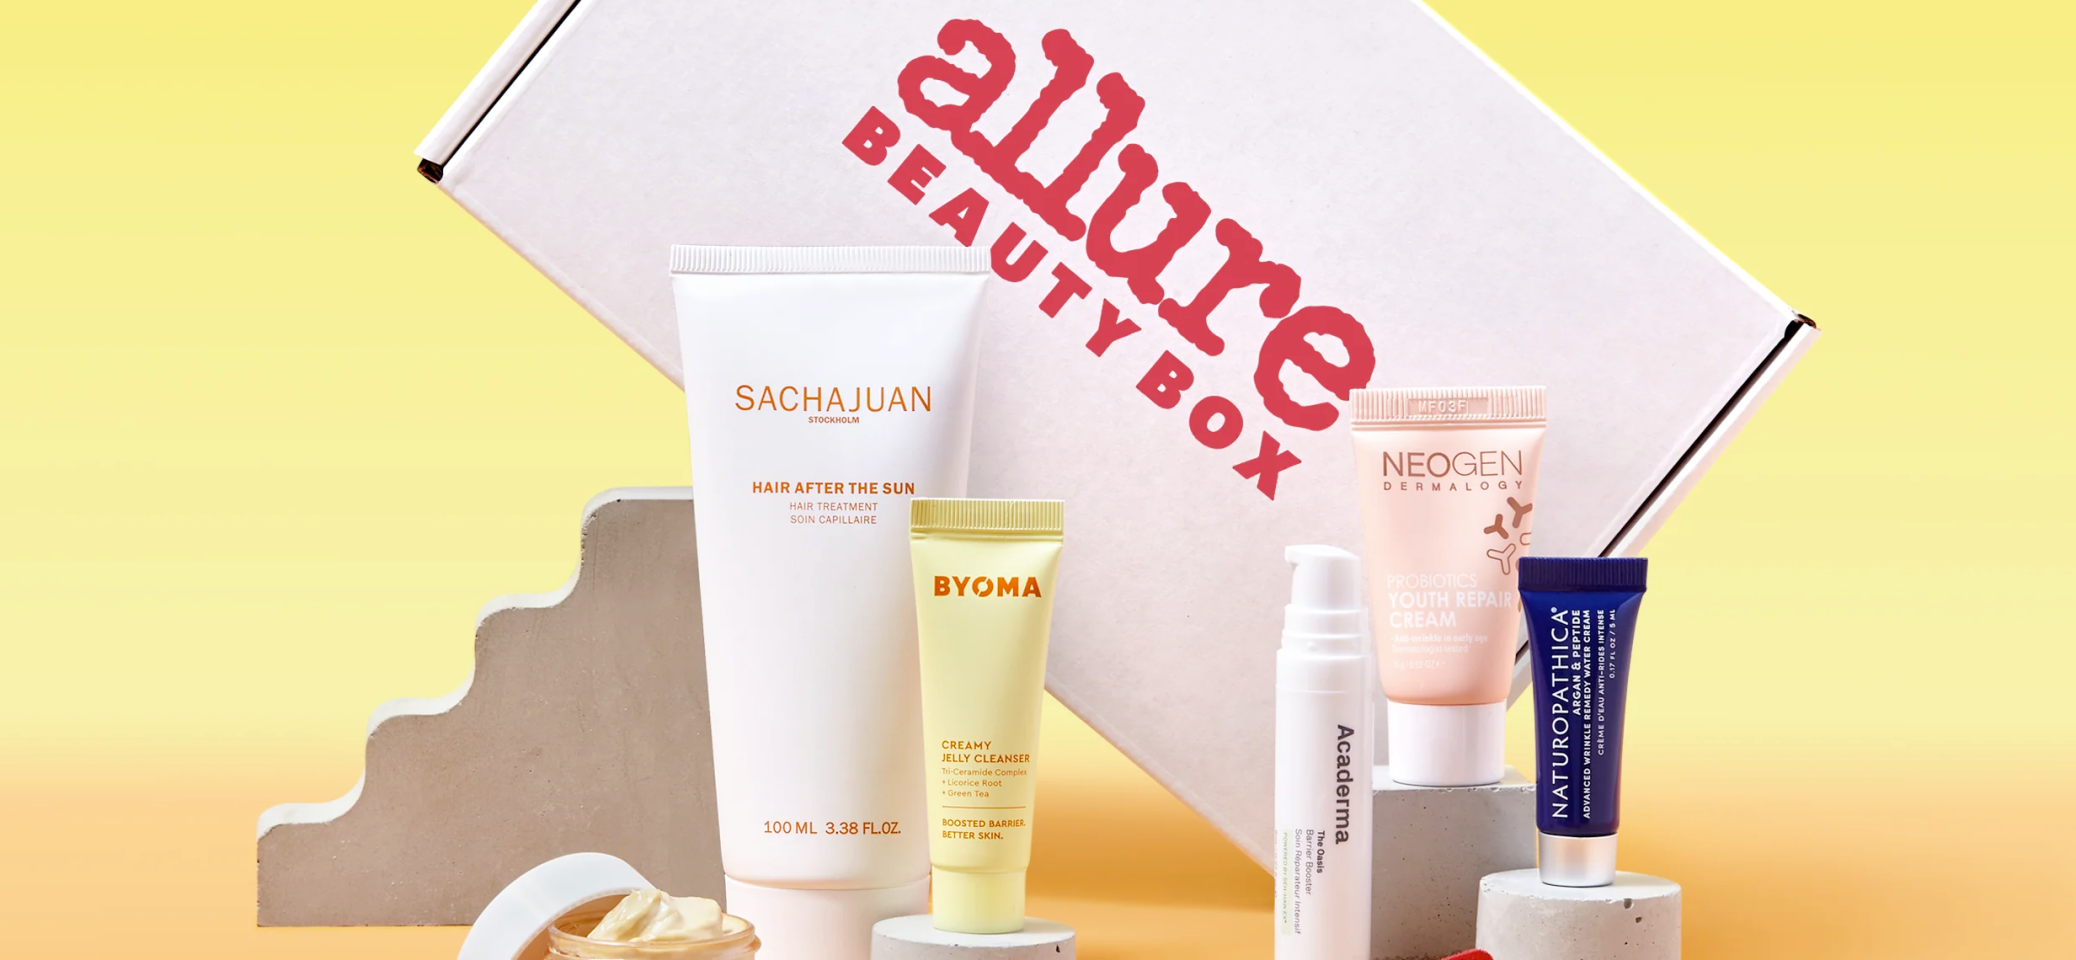 Allure Beauty Box Spoilers Hello Subscription